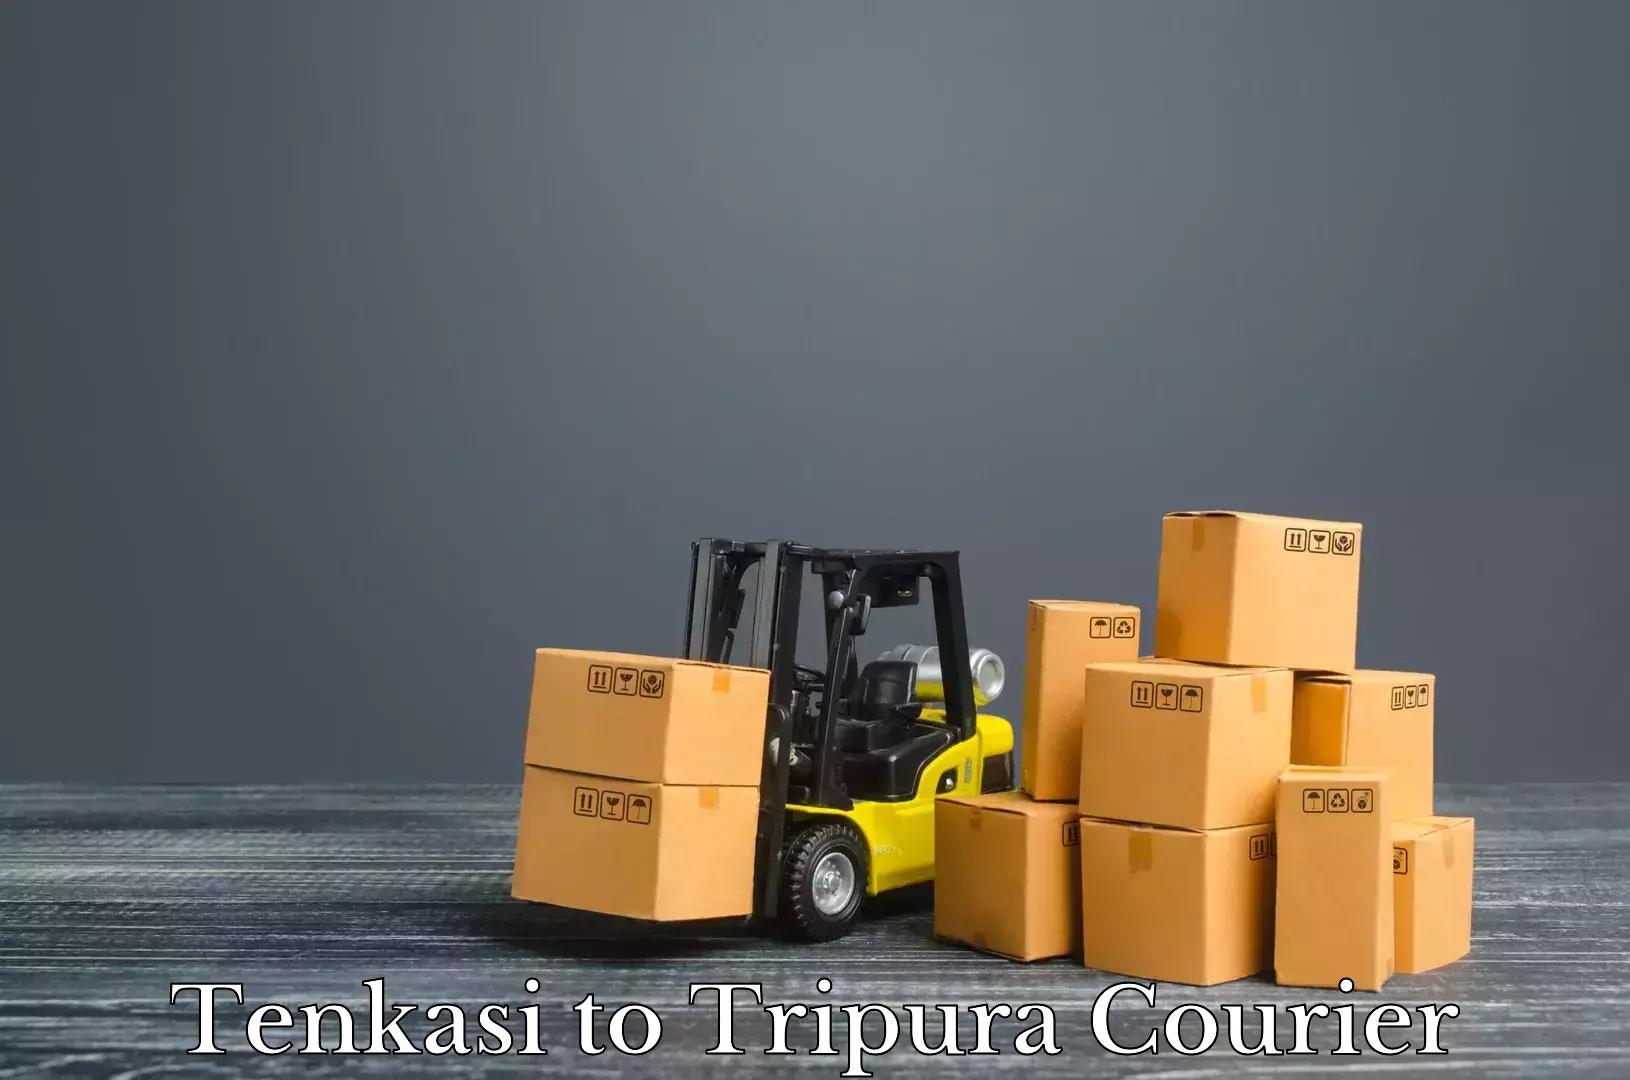 Luggage shipment processing Tenkasi to Manughat